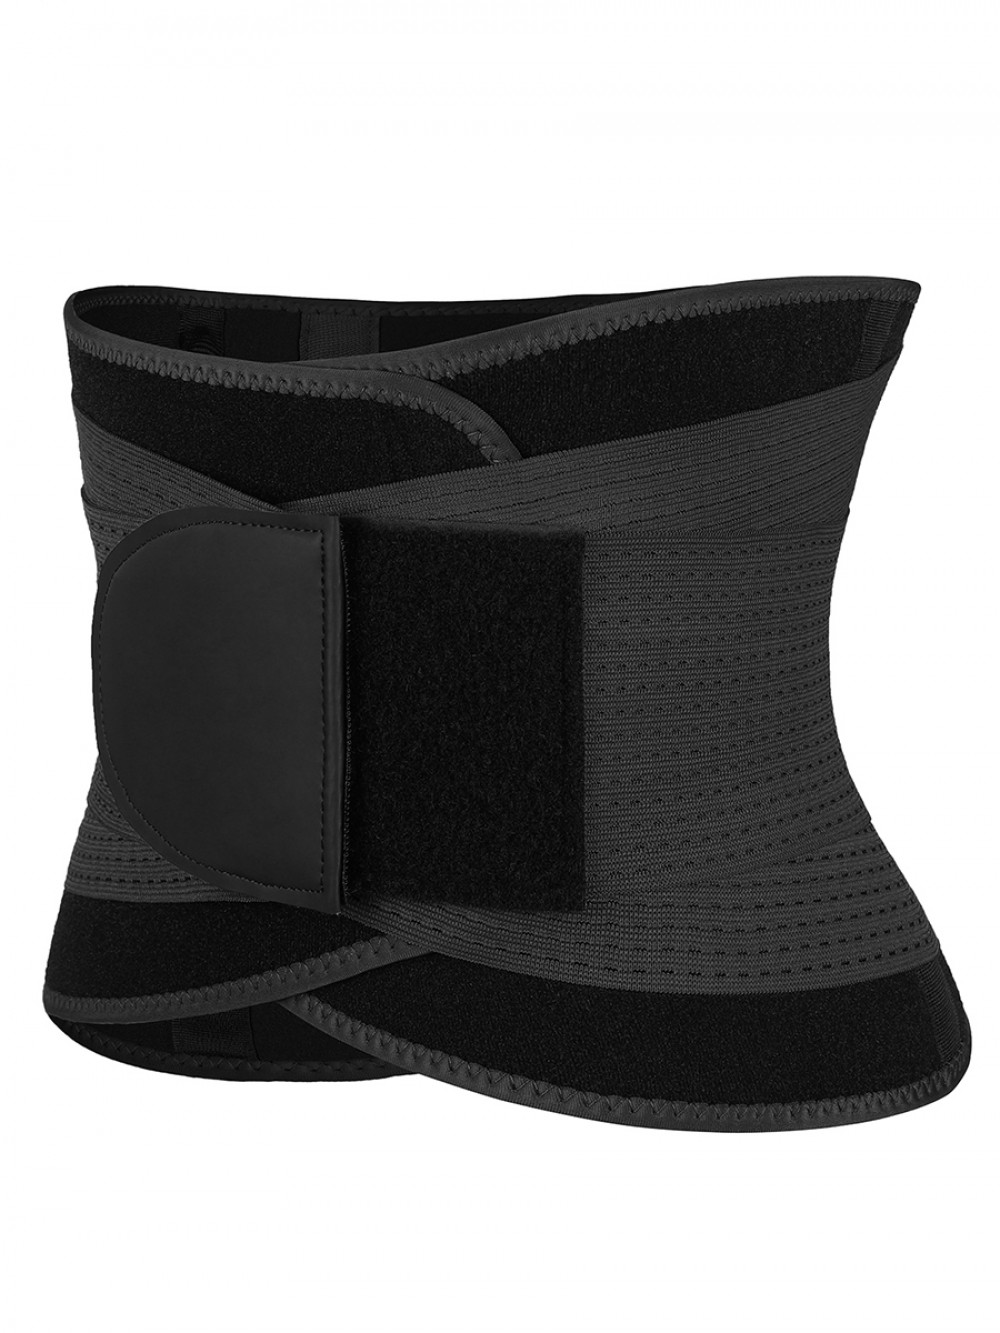 Black 5 Plastic Bones Neoprene Waist Trainer Belt For Fitness